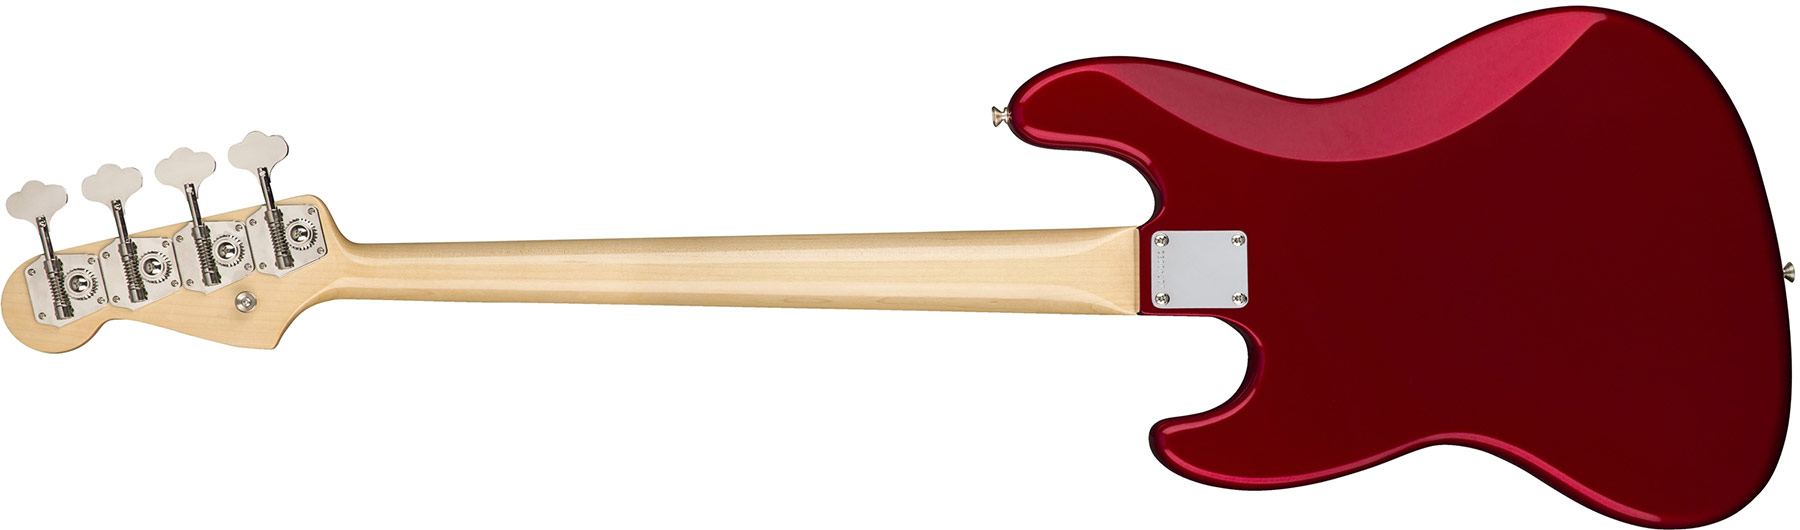 Fender Jazz Bass '60s American Original Usa Rw - Candy Apple Red - Bajo eléctrico de cuerpo sólido - Variation 2